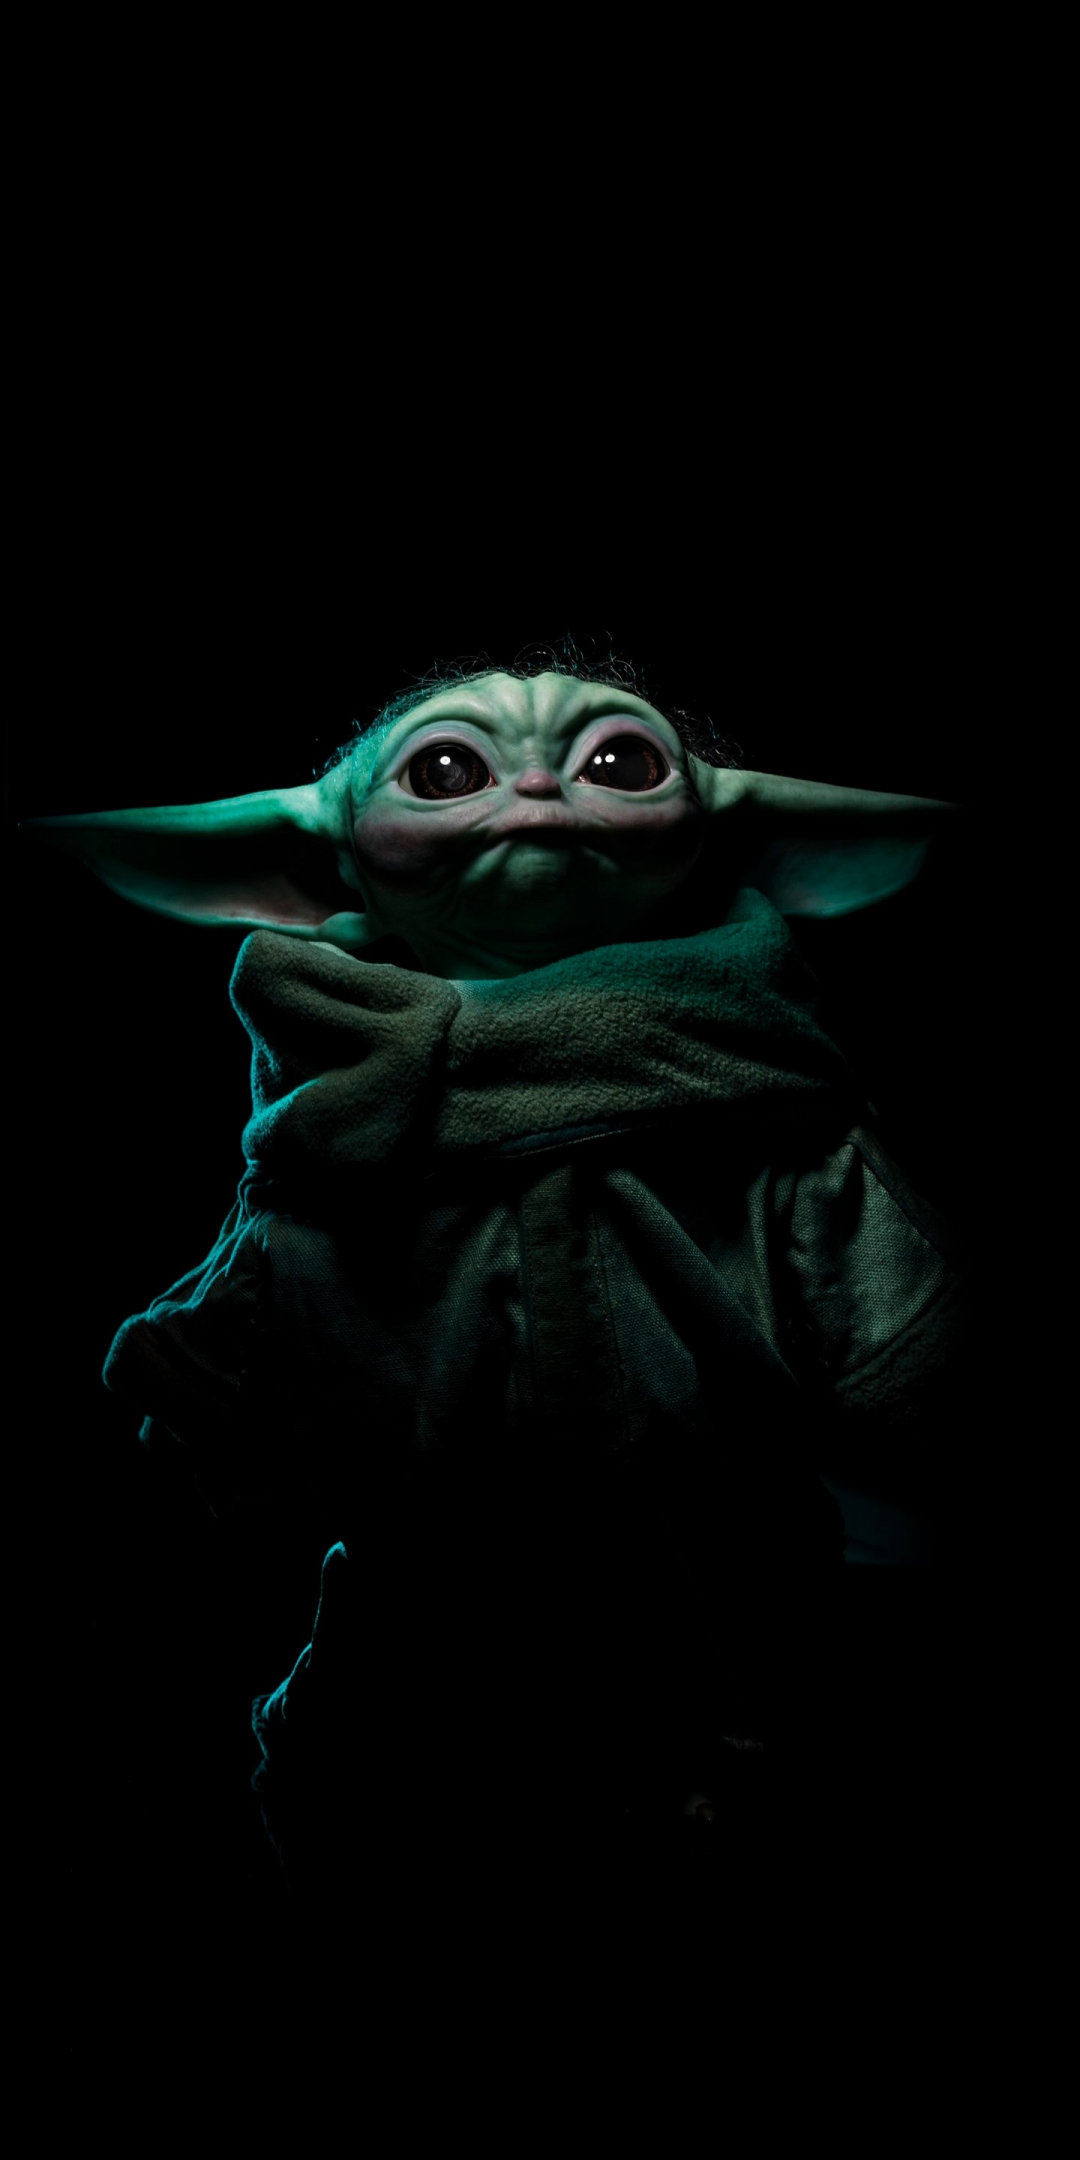 Baby Yoda, star wars, fan art, 2021, 1080x2160 wallpaper